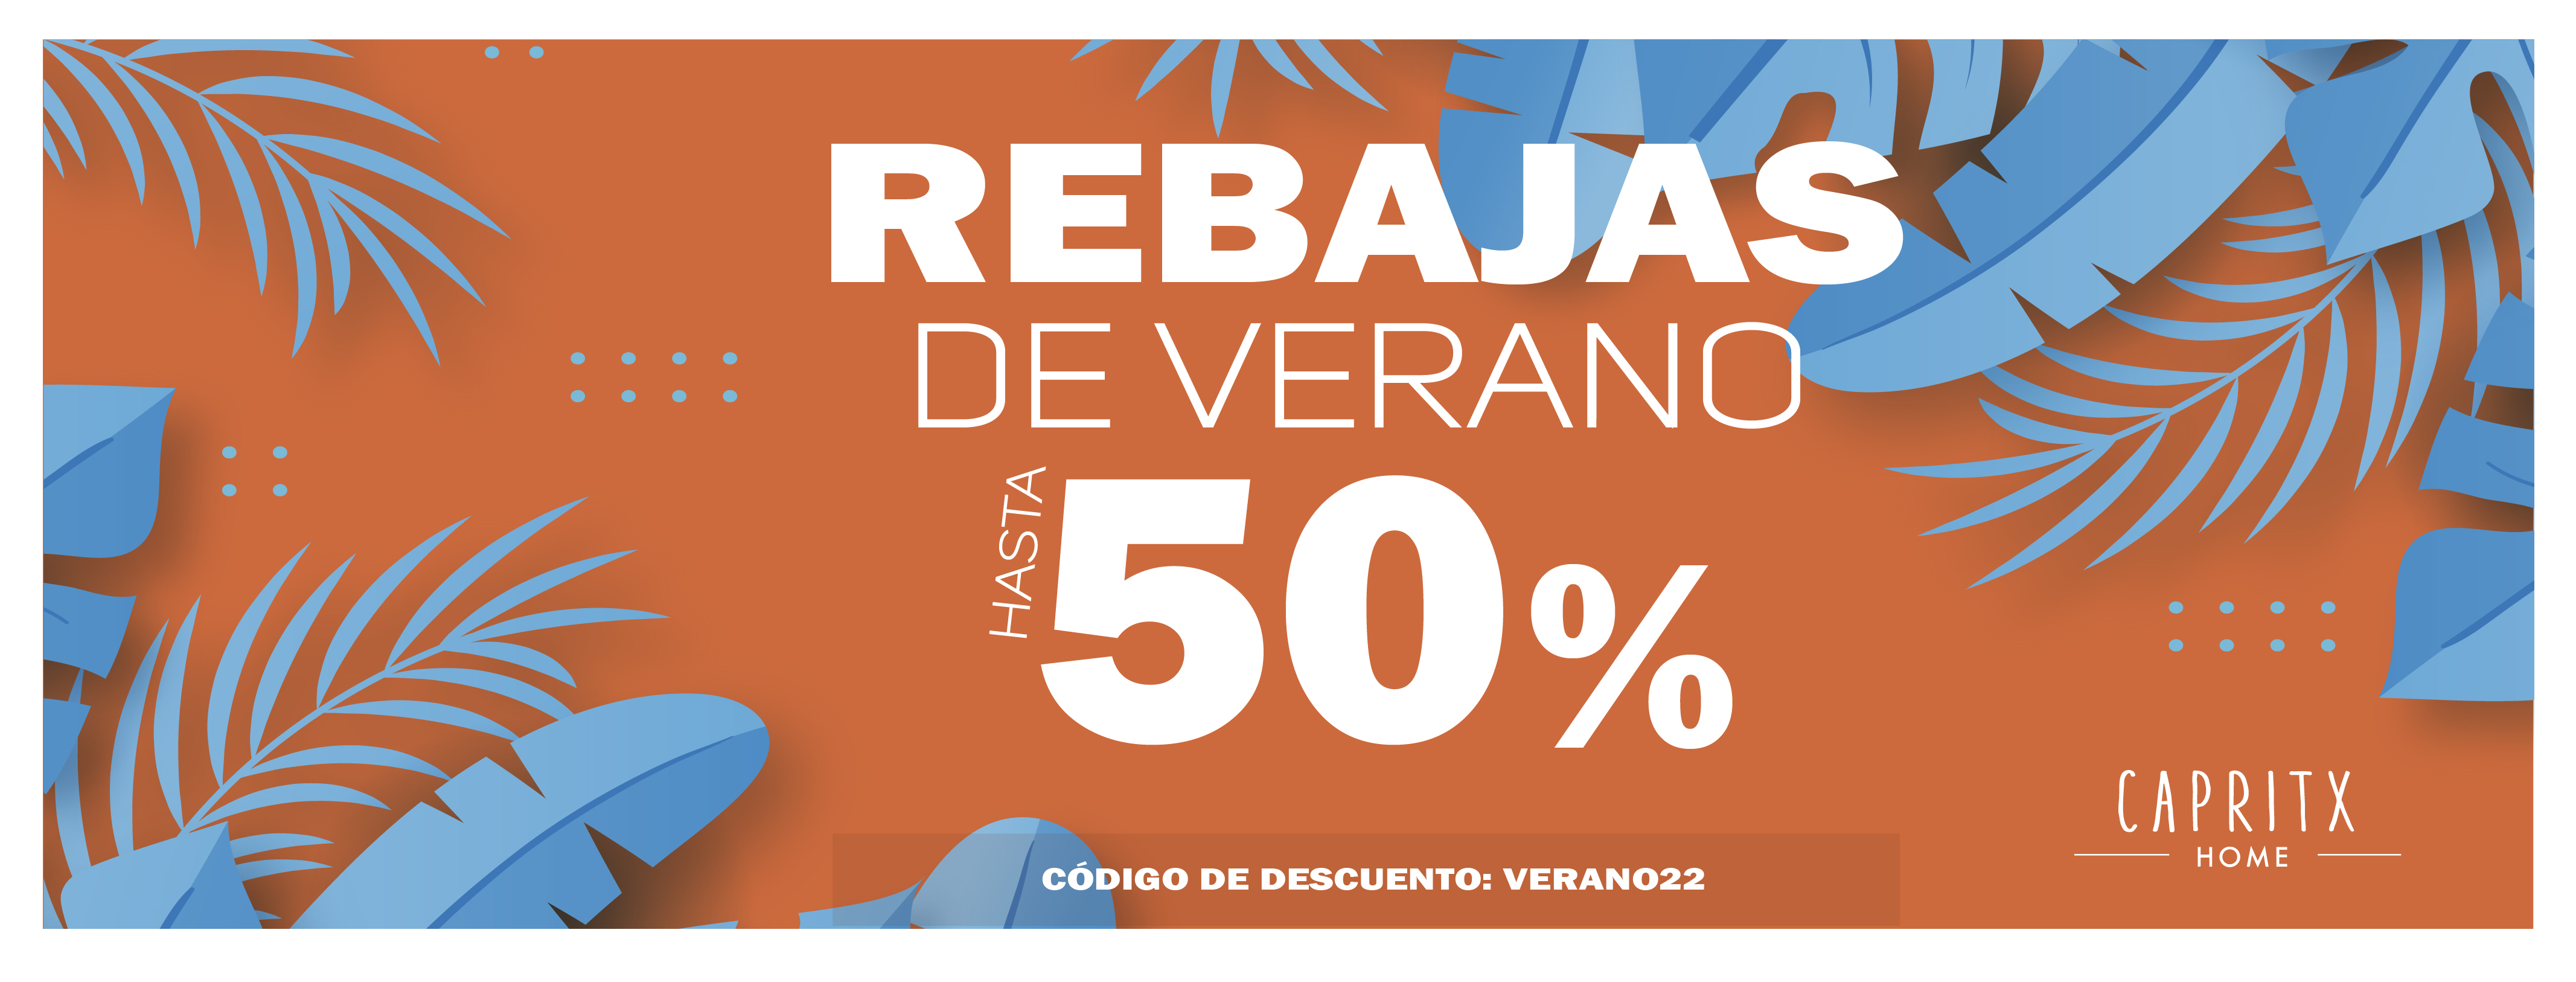 WEB-campaña-REBAJAS-DE-VERANO-CAPRITX-2022-01